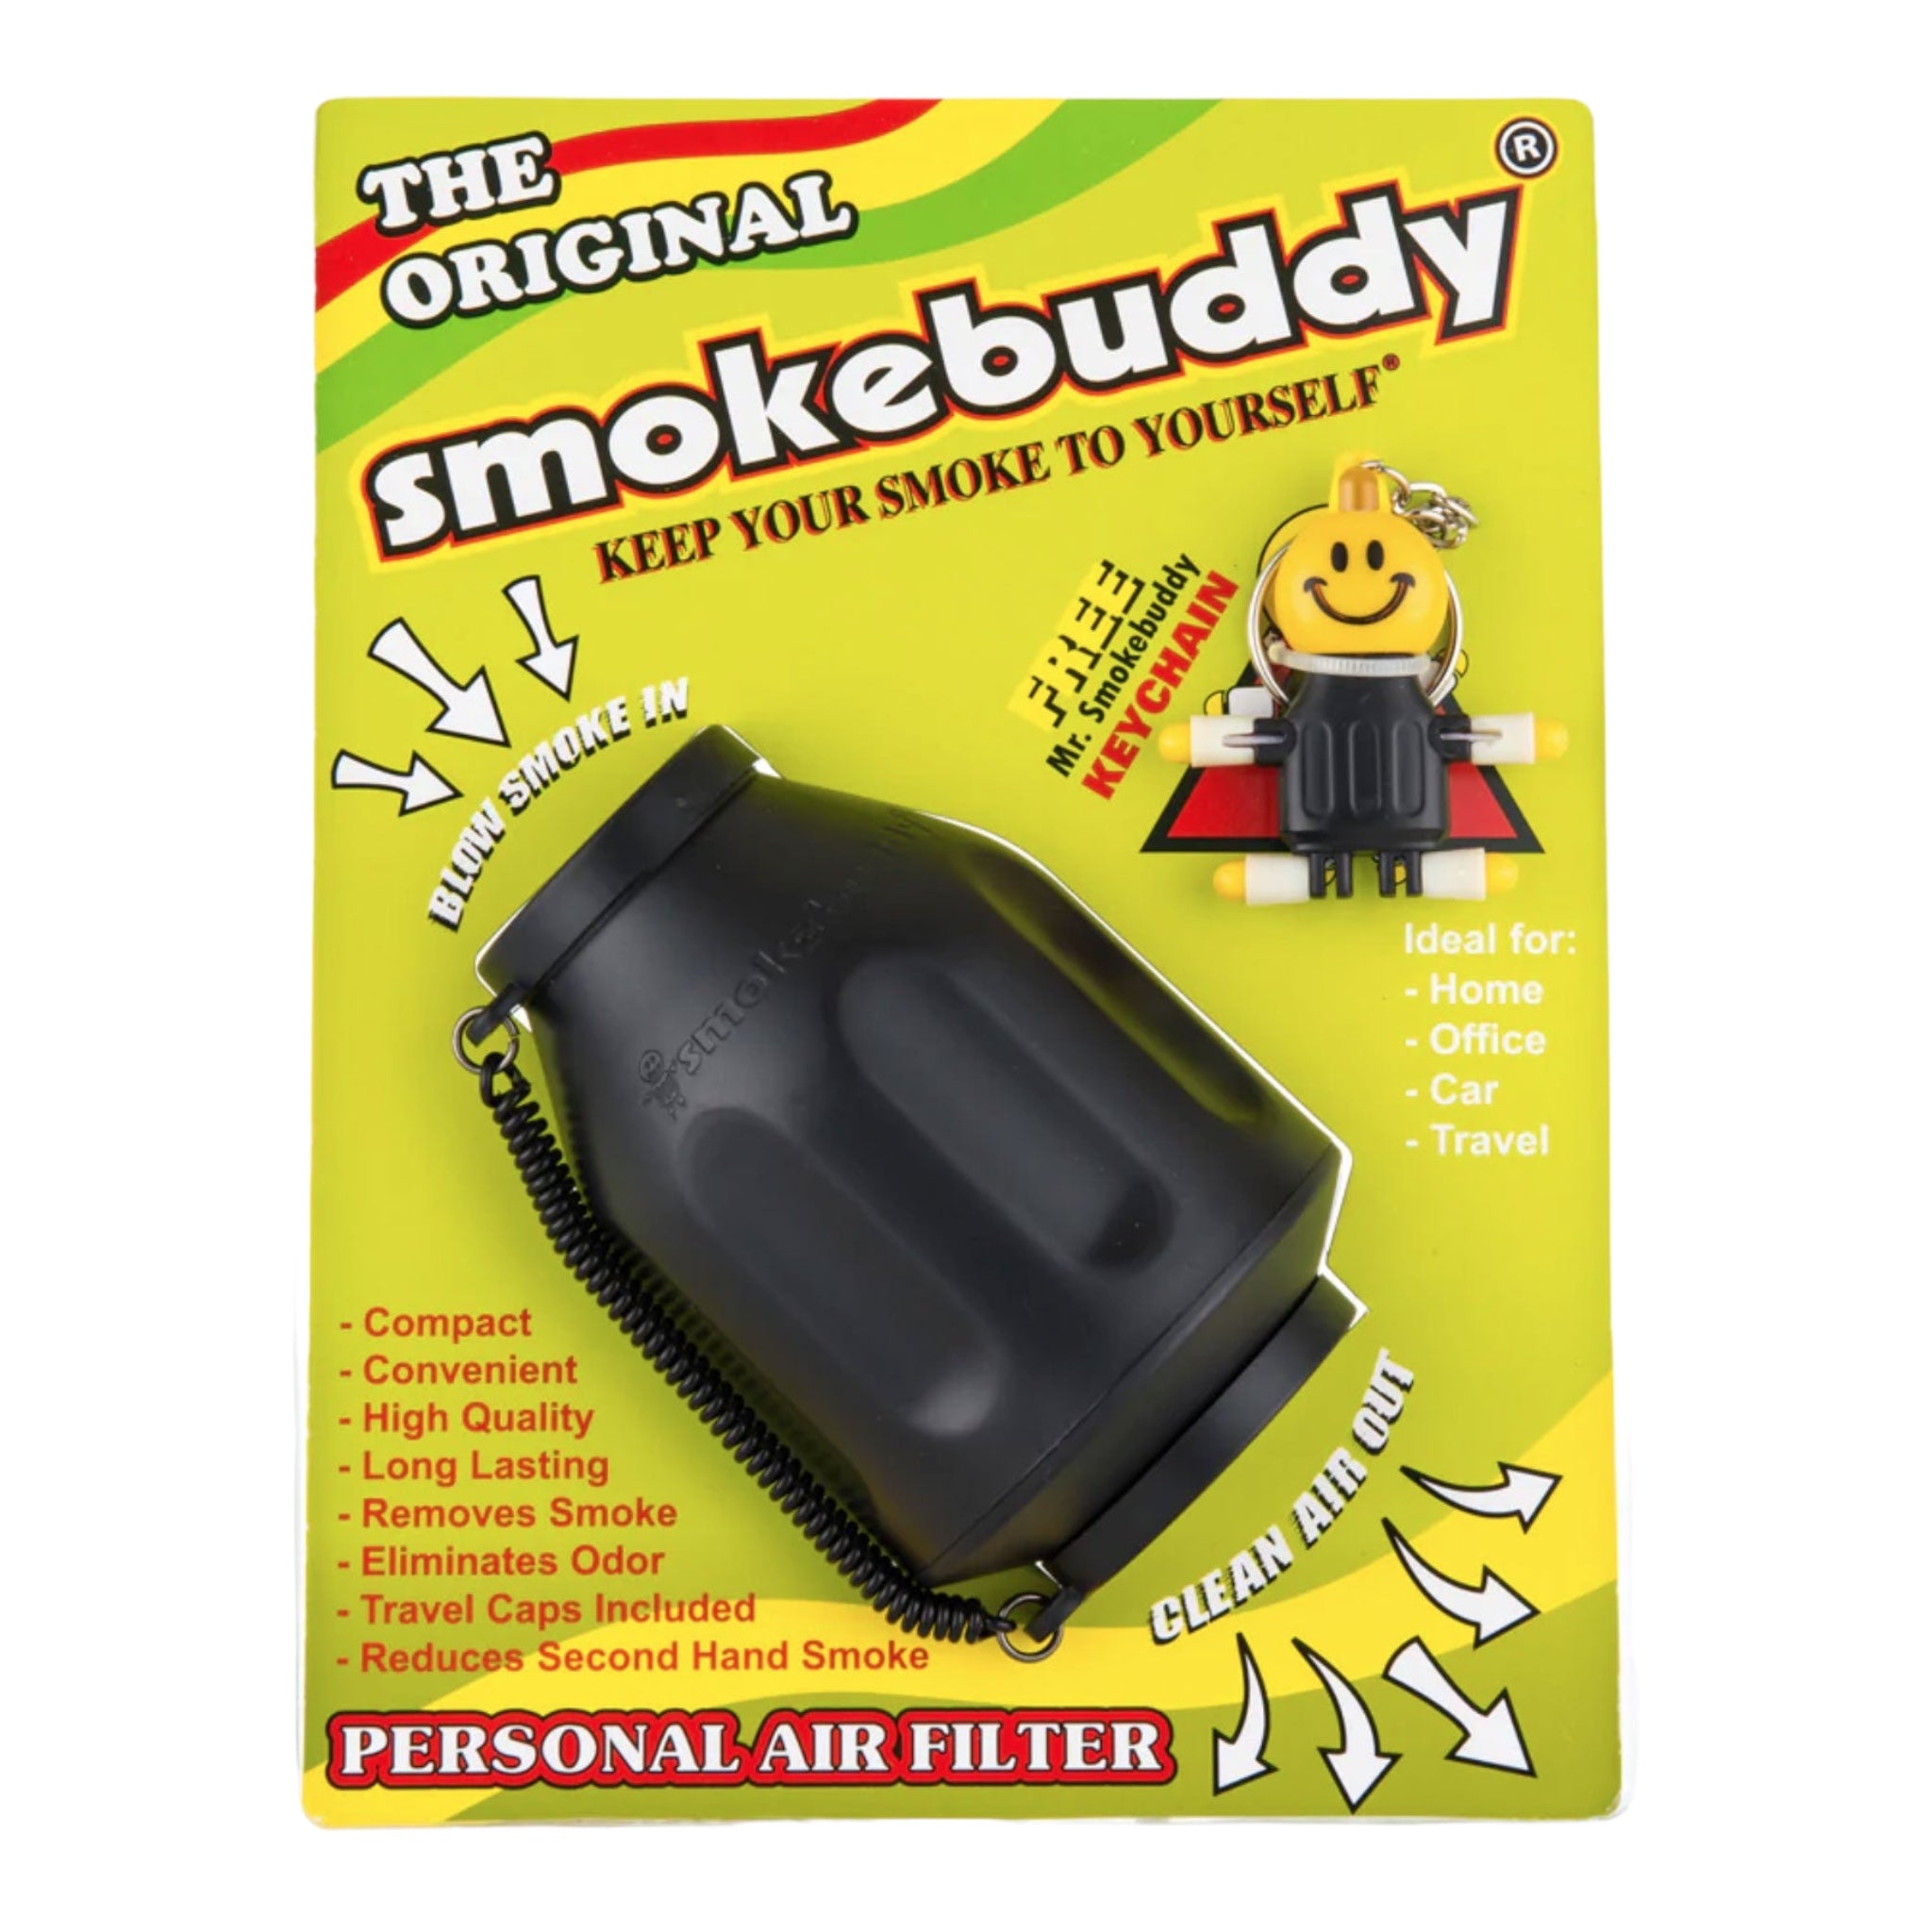 Original Smokebuddy air filter - various colors